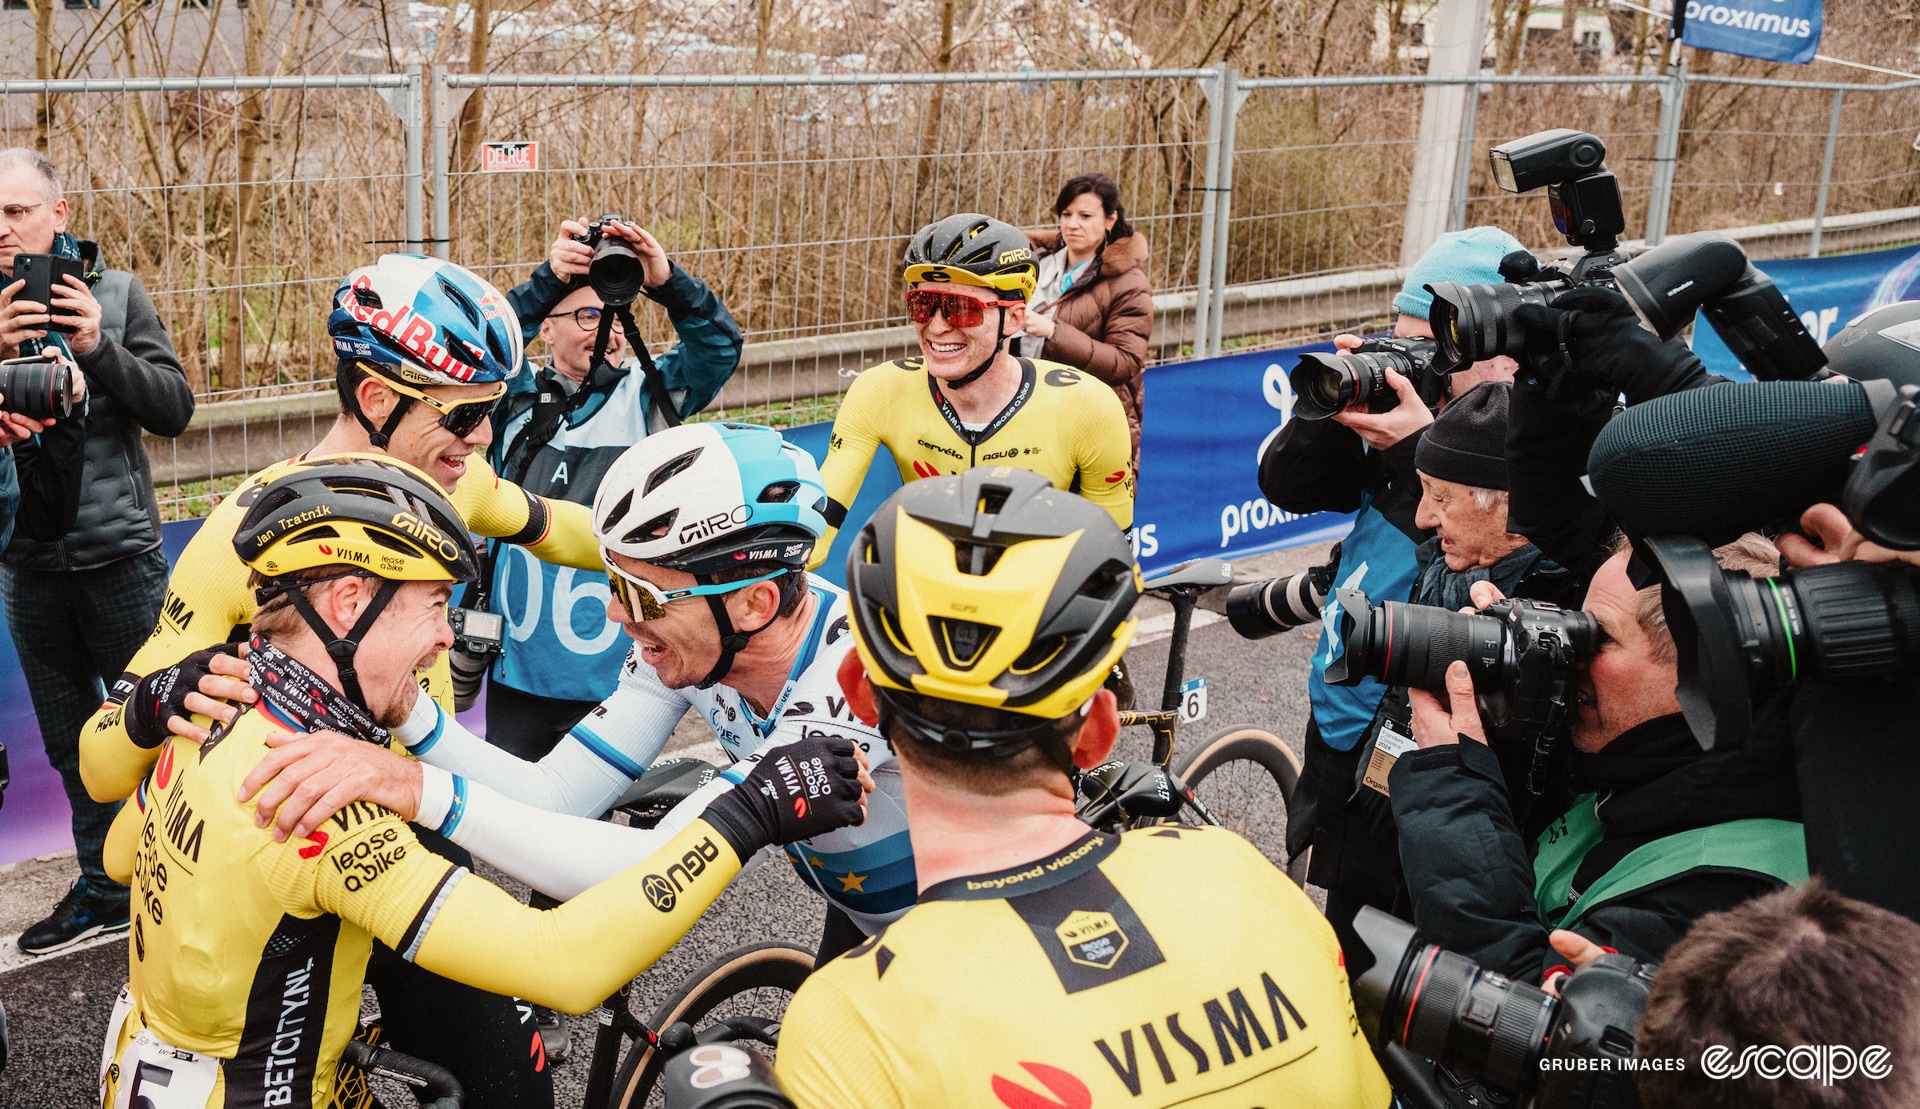 Visma-Lease a Bike riders celebrate Tratnik's win